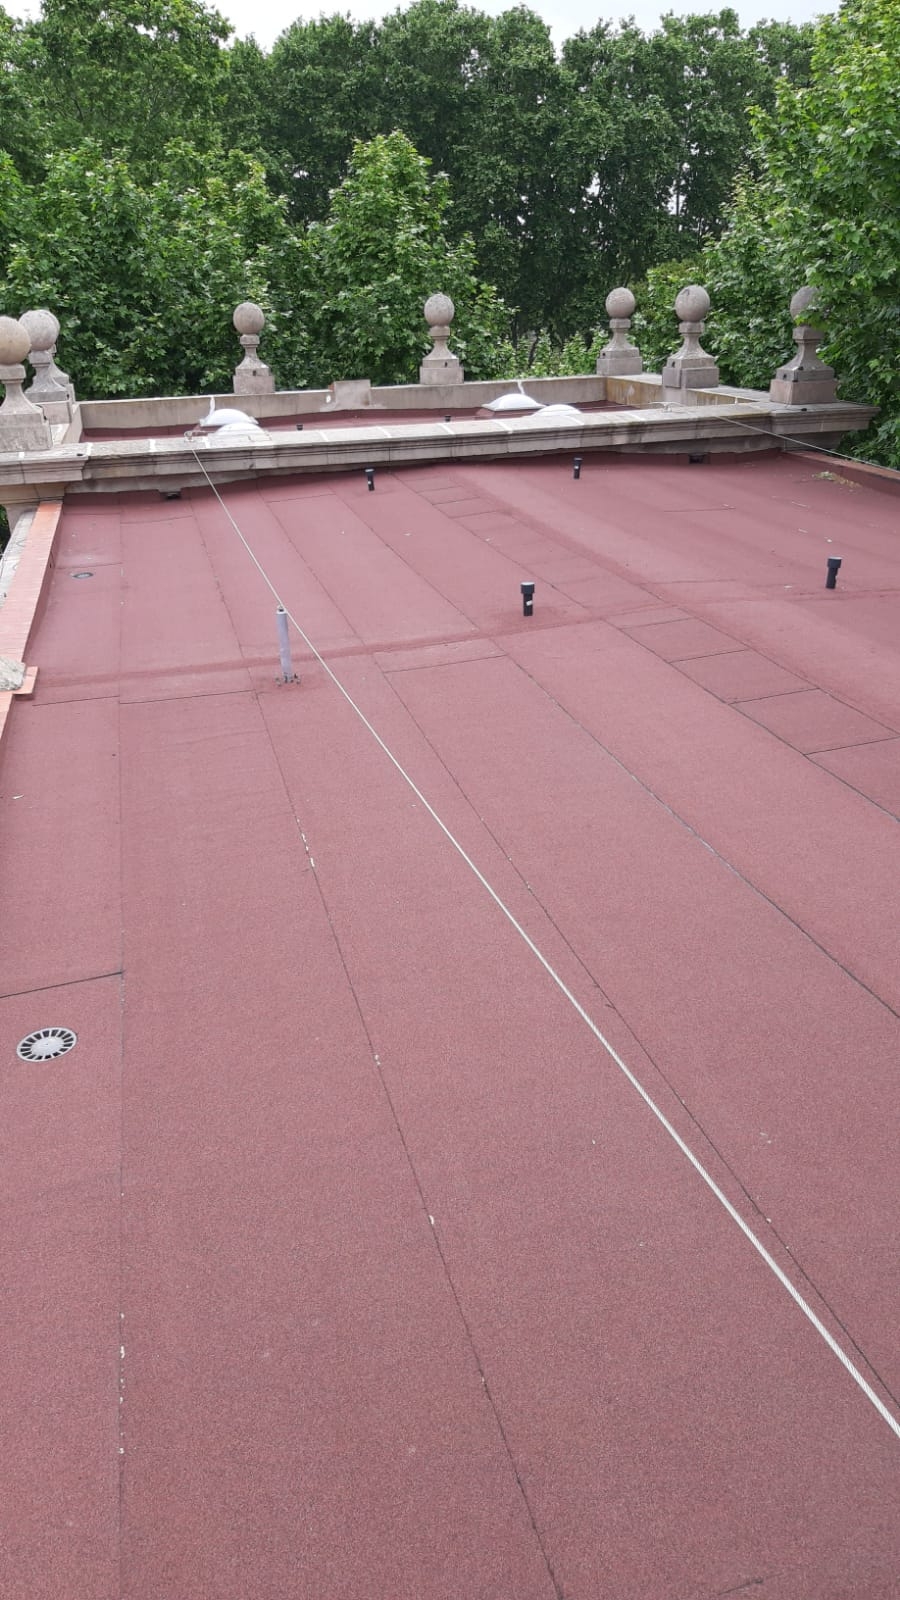 Impermeabilización terraza plana con lámina autoprotegida con acabado de color rojo